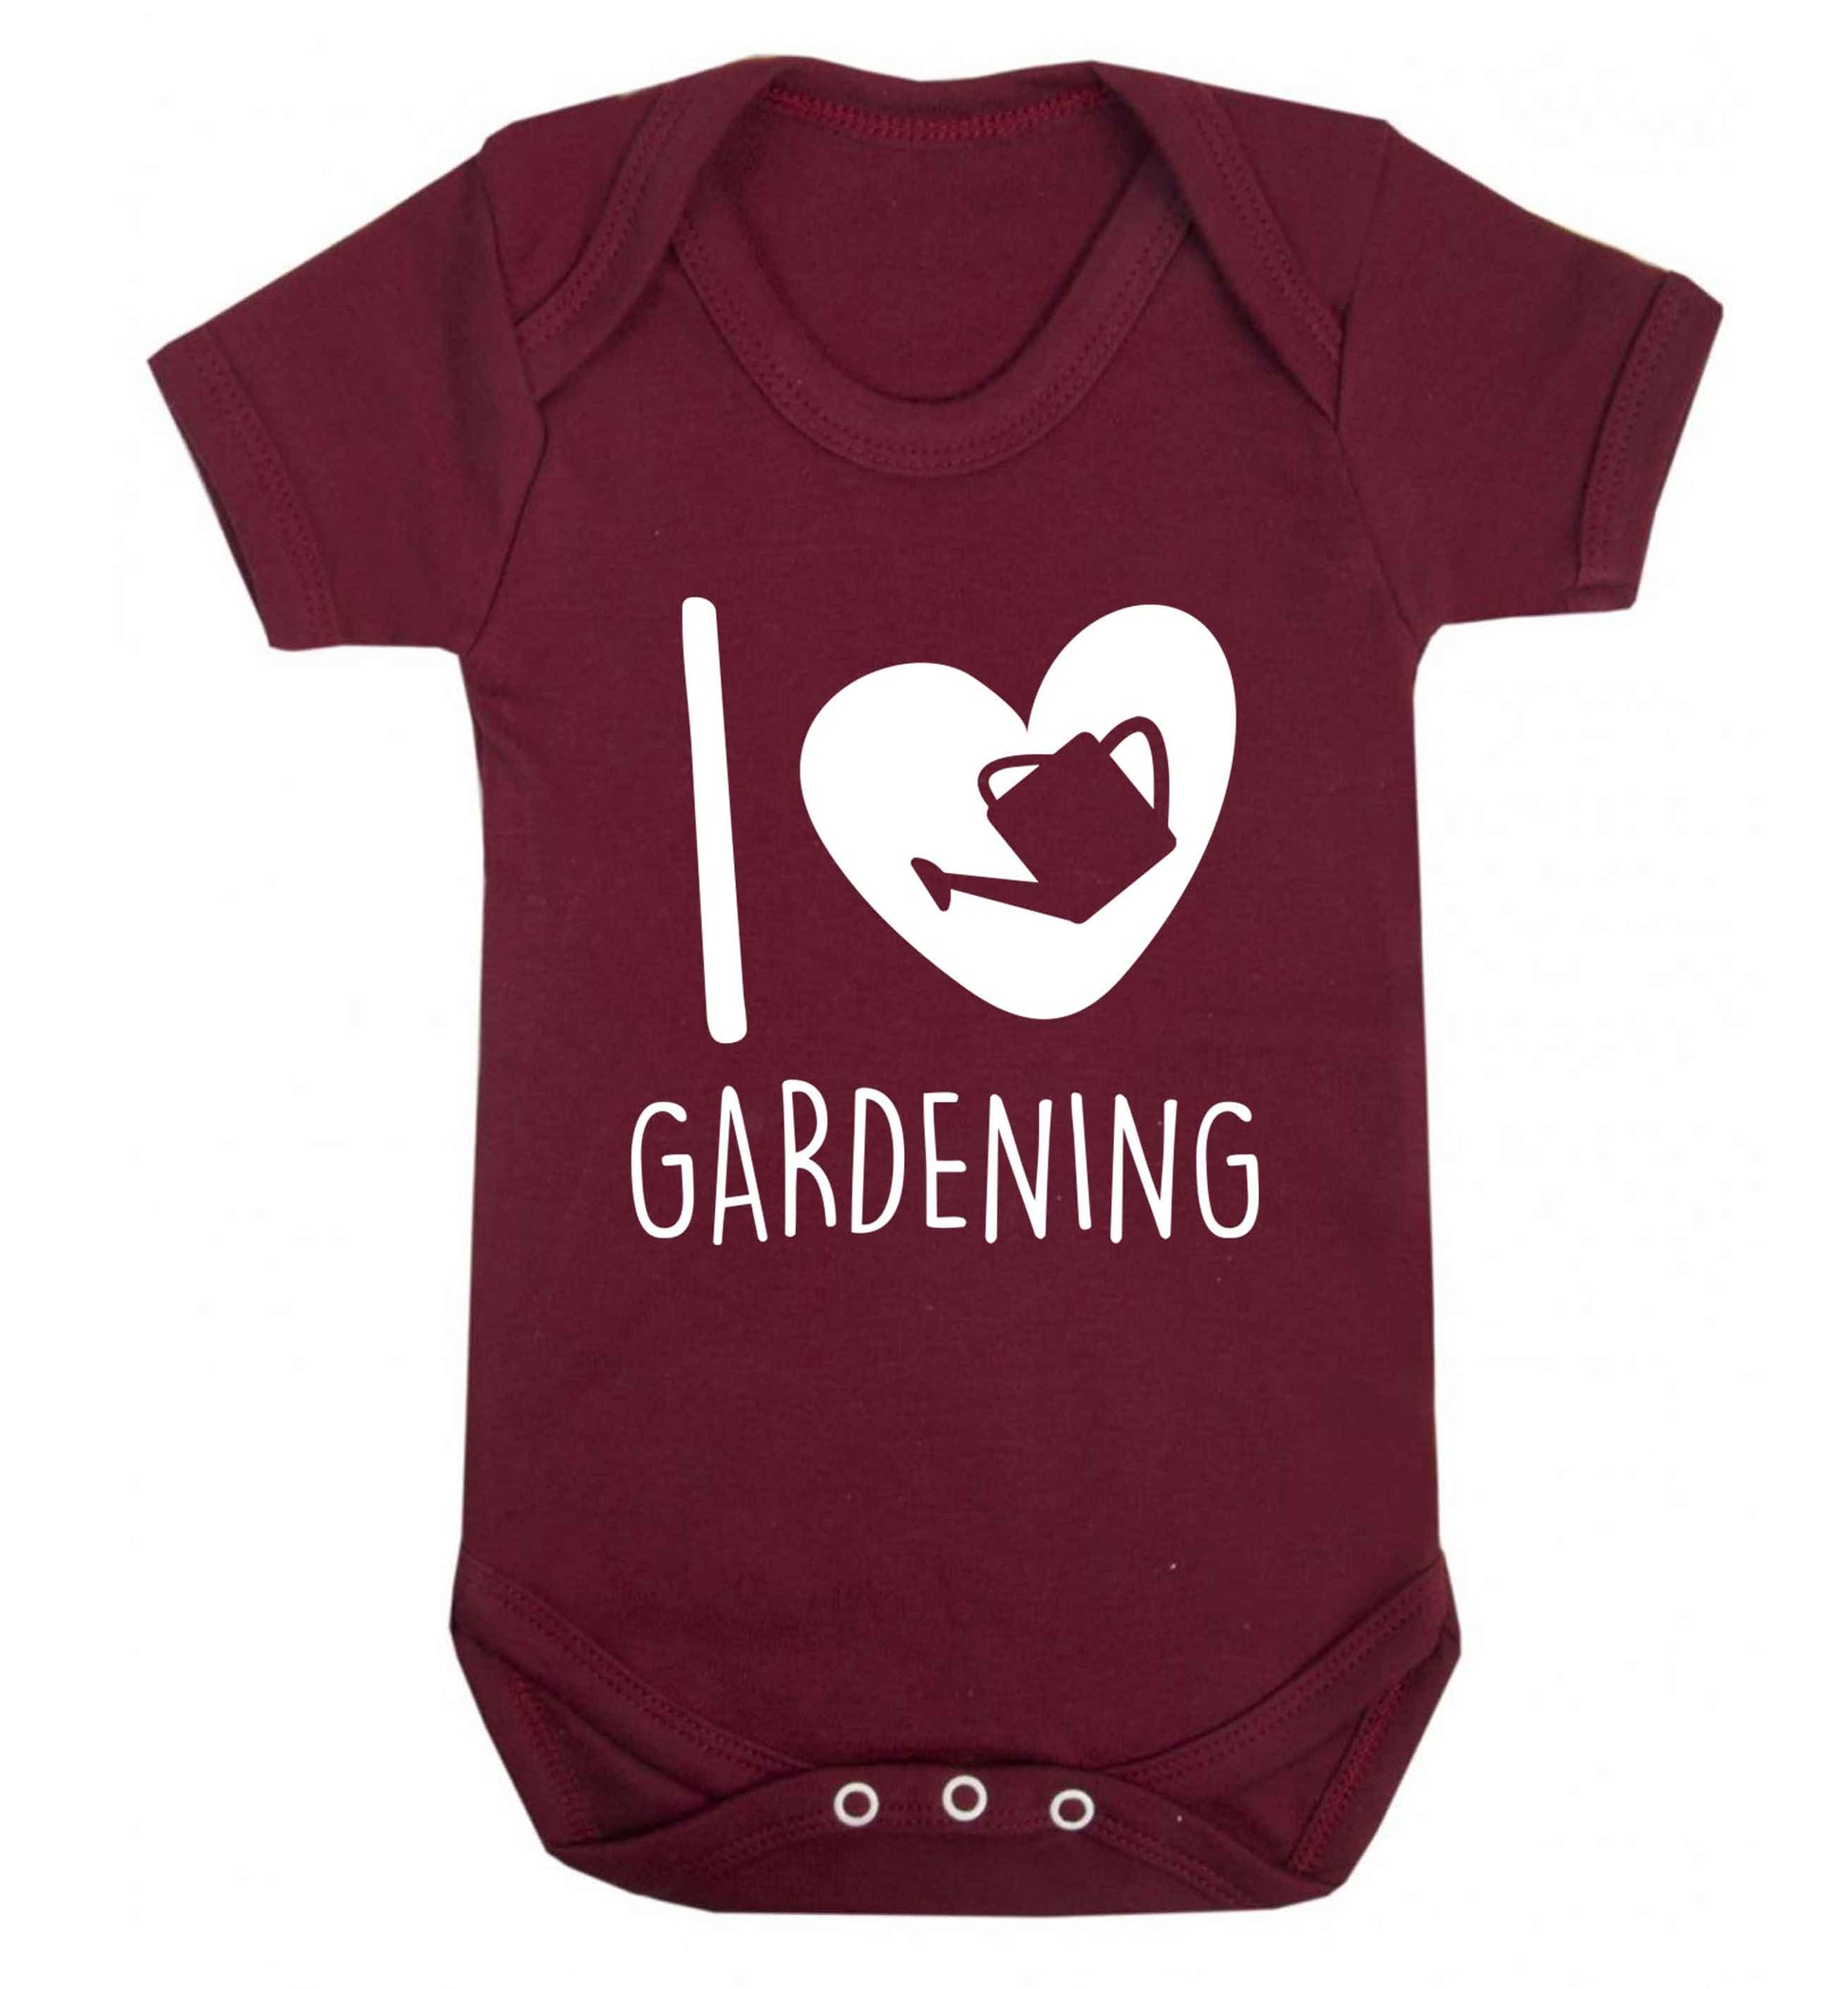 I love gardening Baby Vest maroon 18-24 months